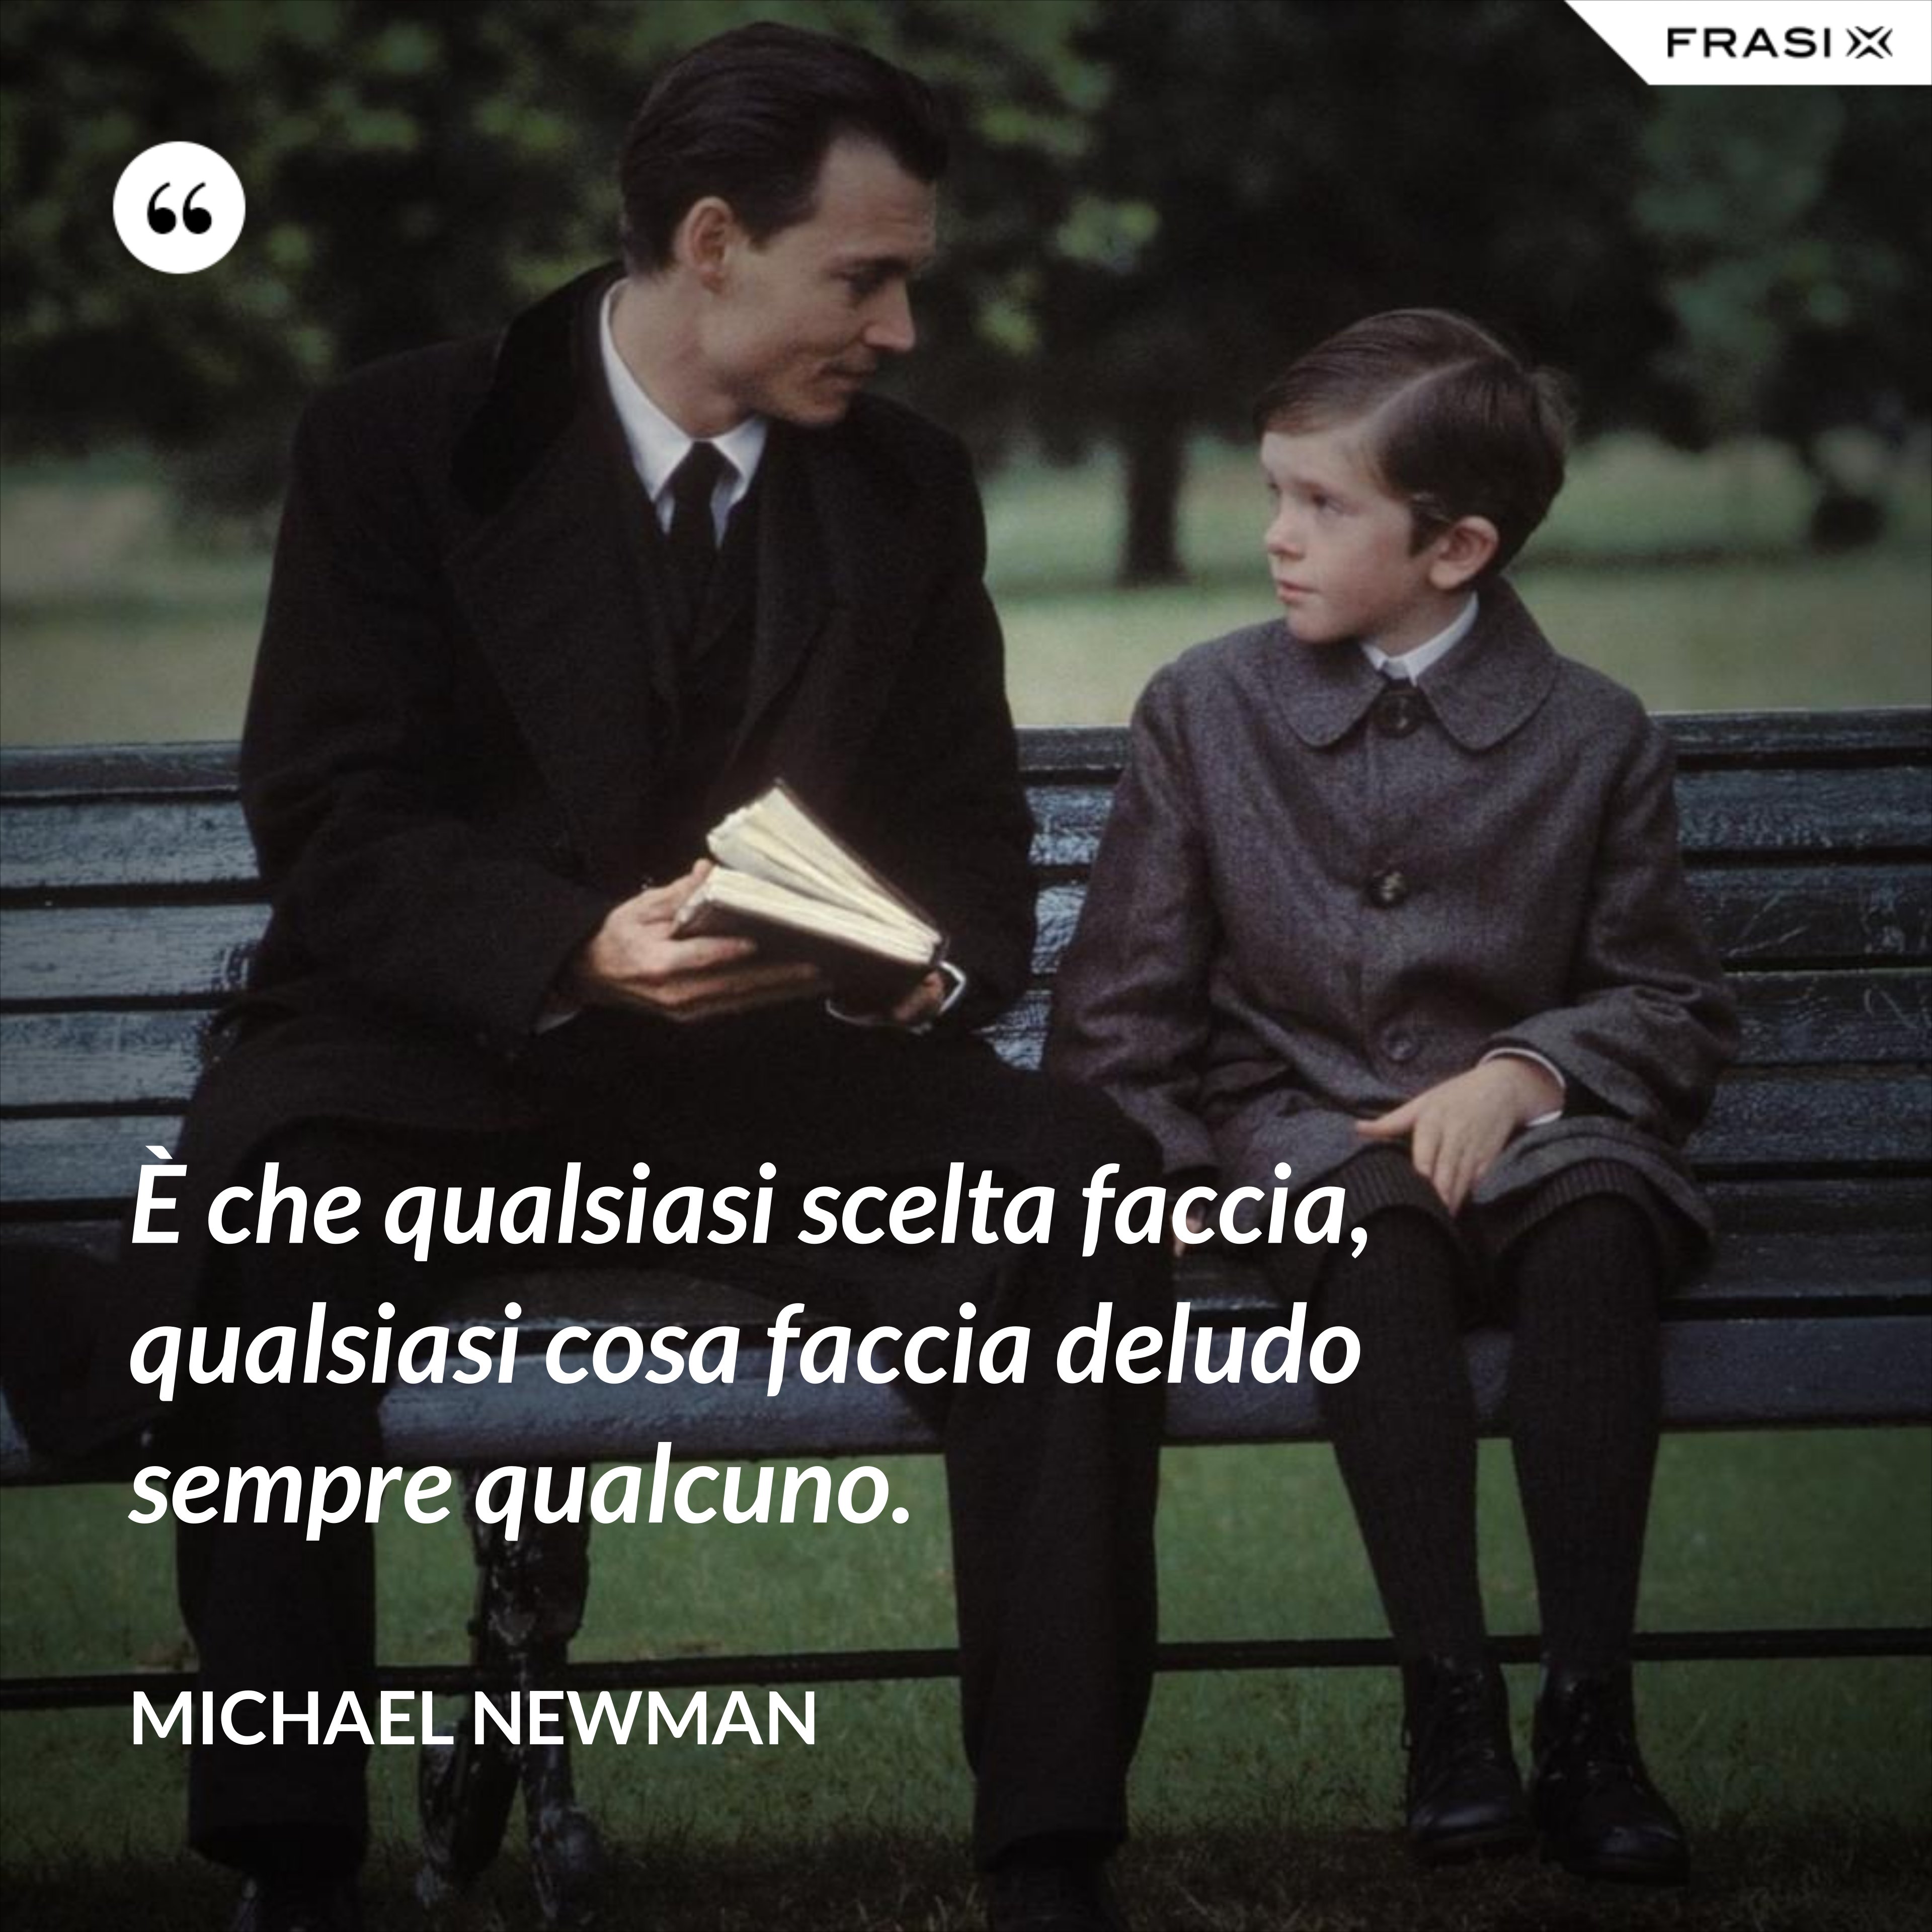 È che qualsiasi scelta faccia, qualsiasi cosa faccia deludo sempre qualcuno. - Michael Newman